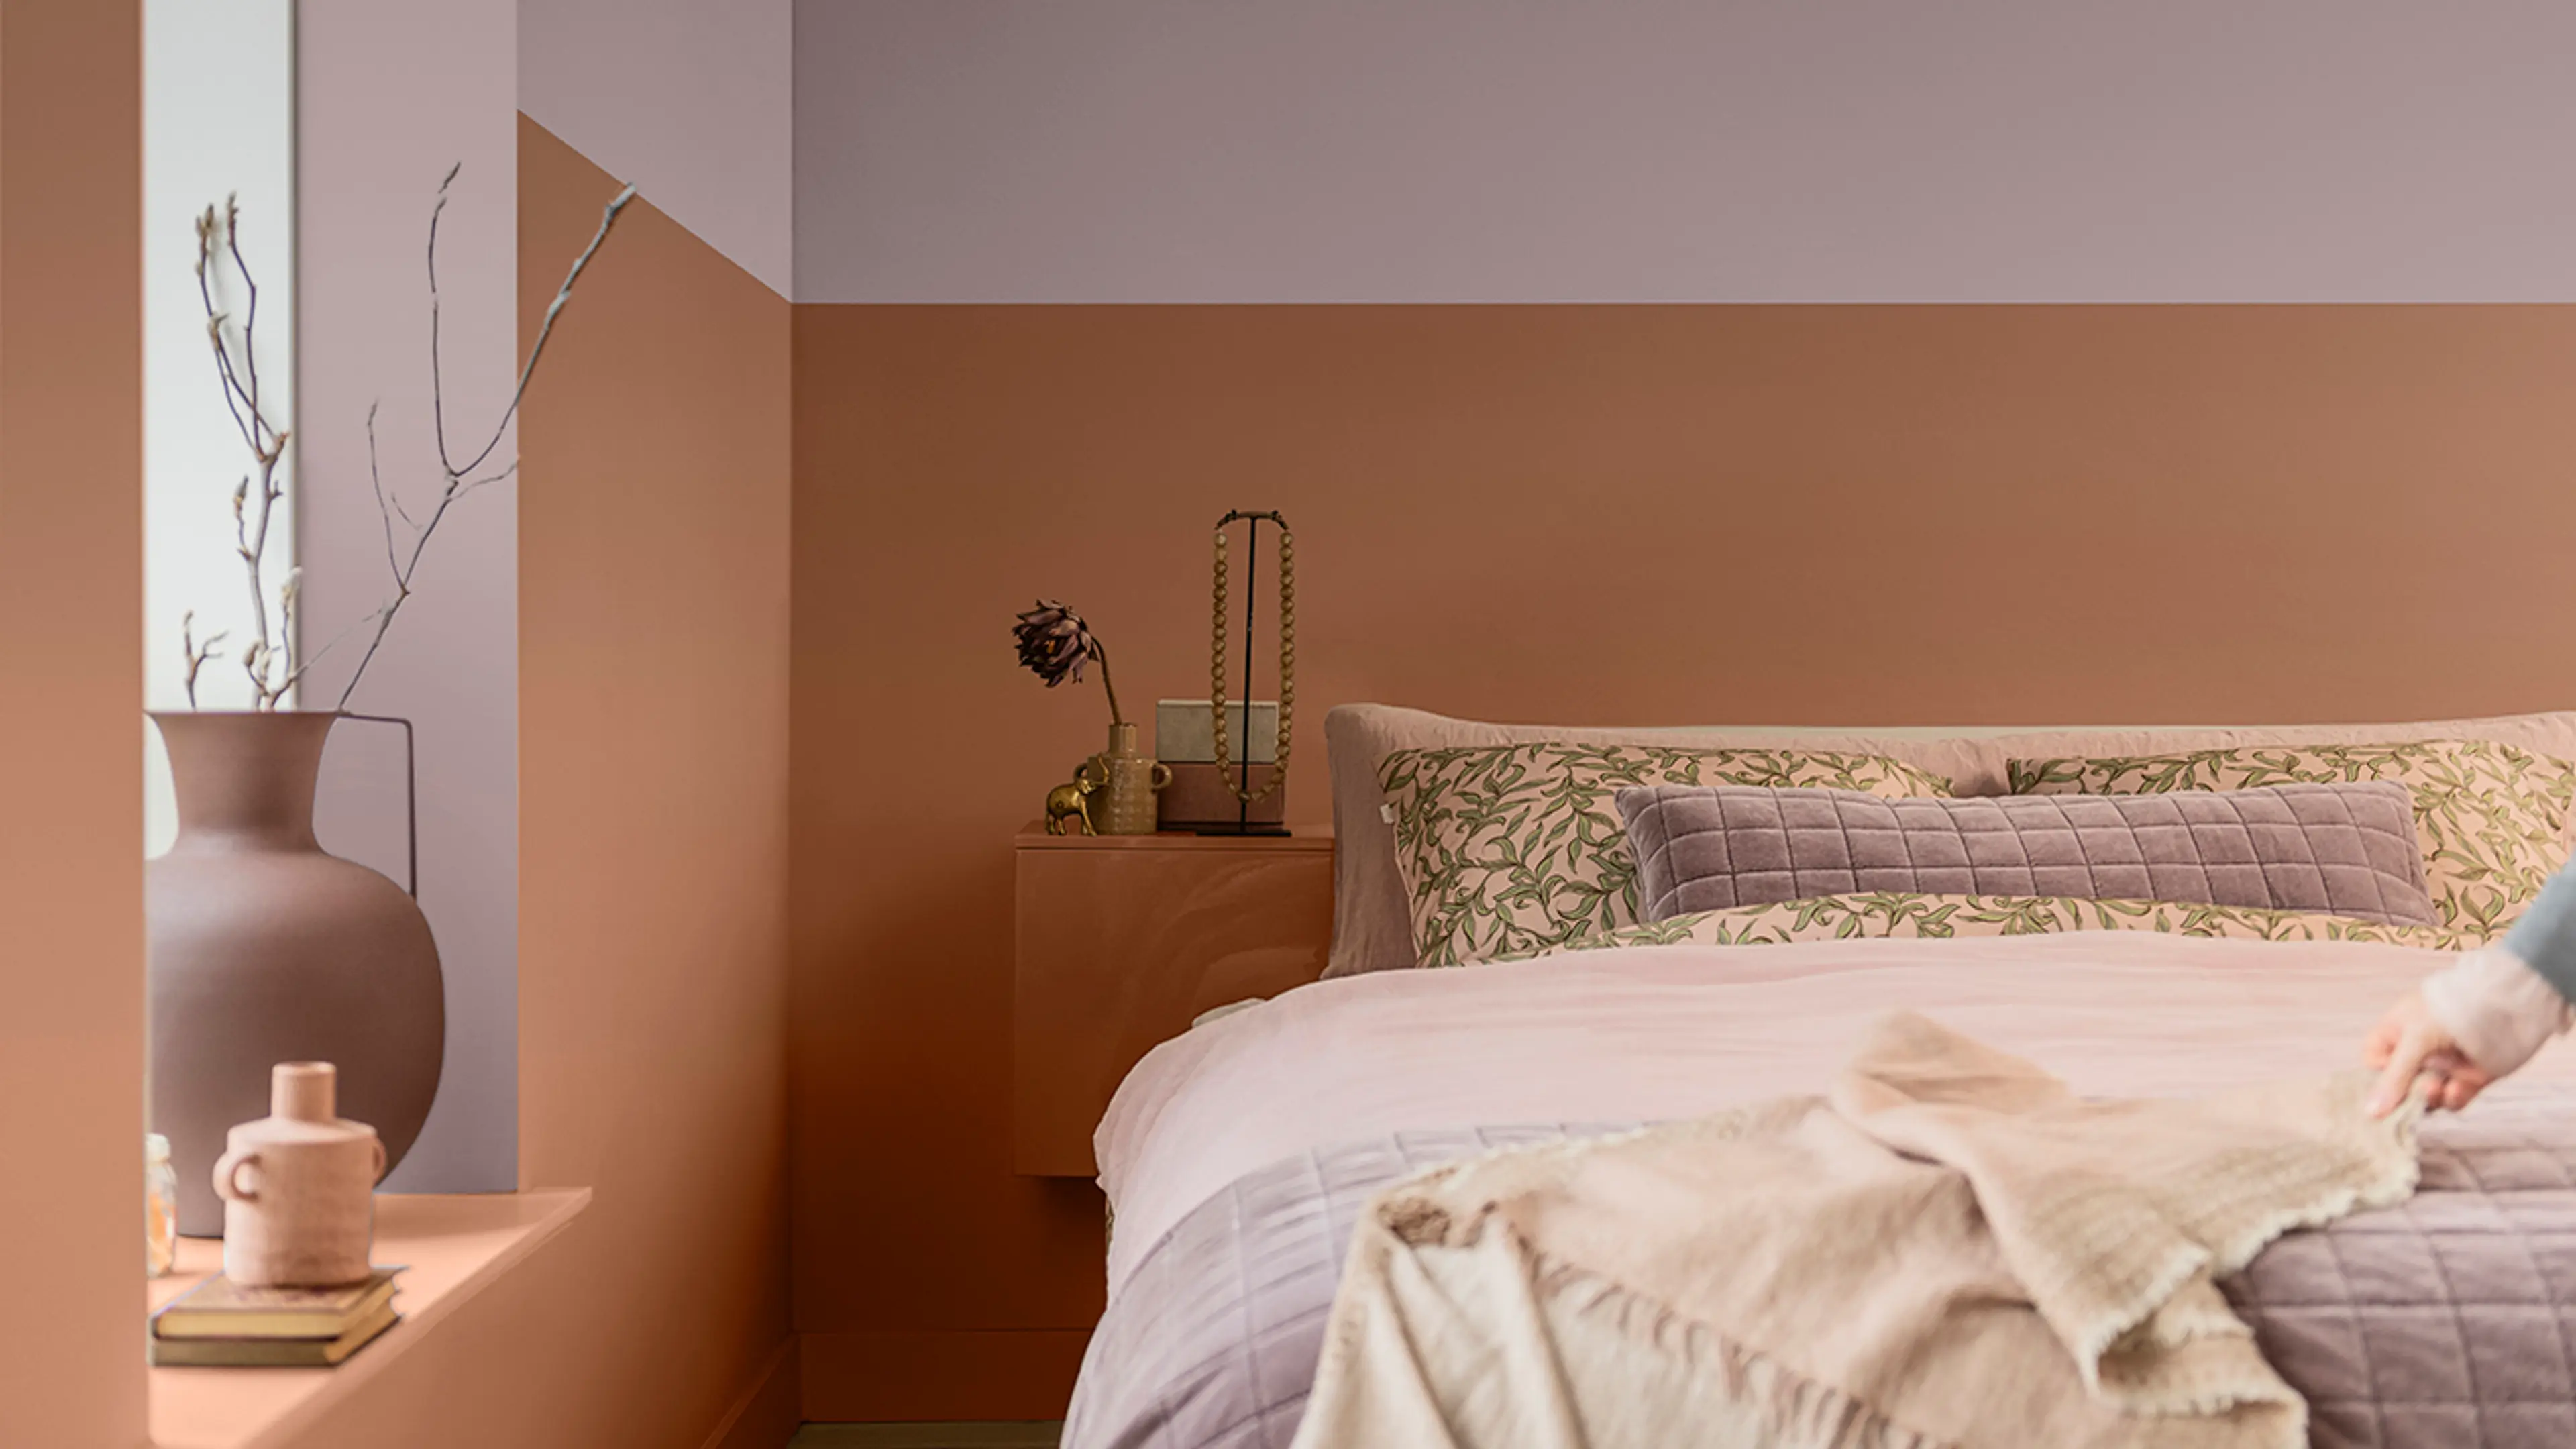 Soverom med oppredd seng og Sweet Embrace fra Norsjö kombinert med en terrakottafarge på veggen.